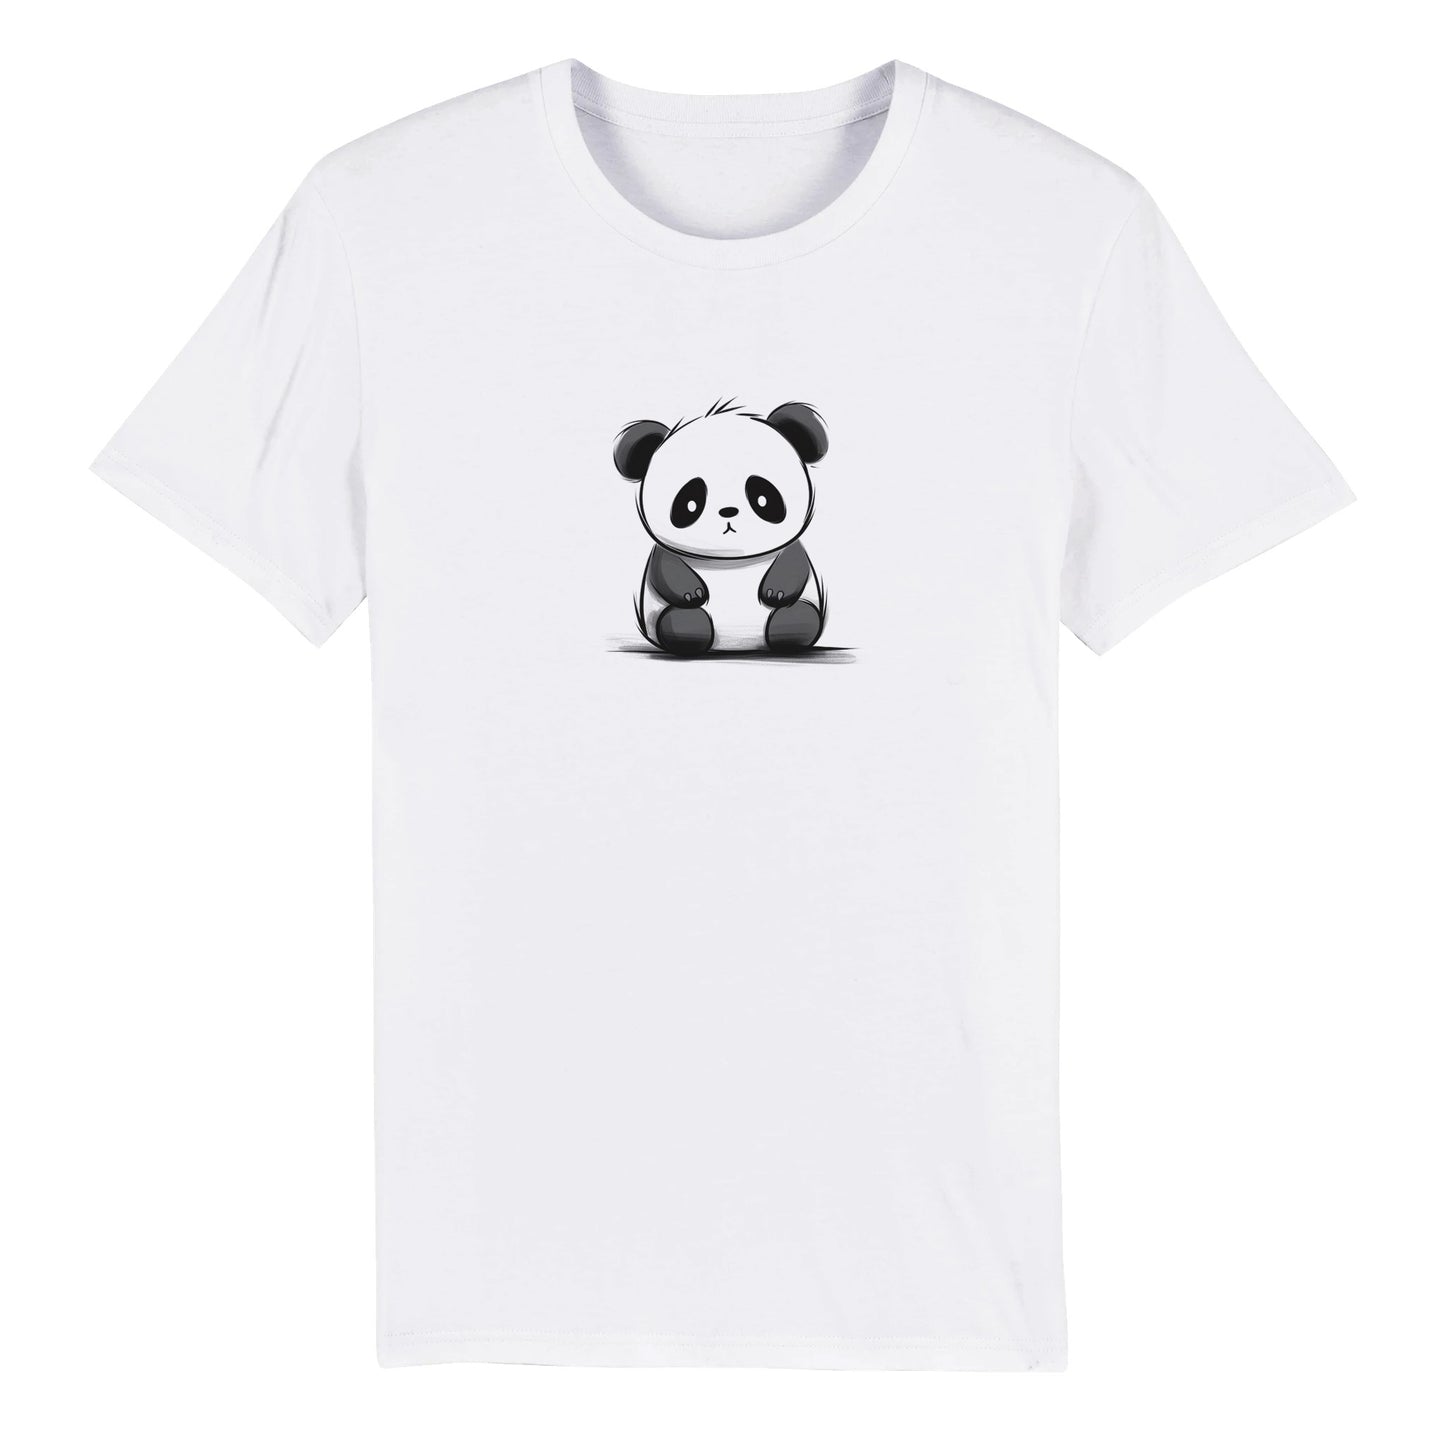 Limited Edition 'Ickle Panda' Minimalist Marvel! 🐼🌟